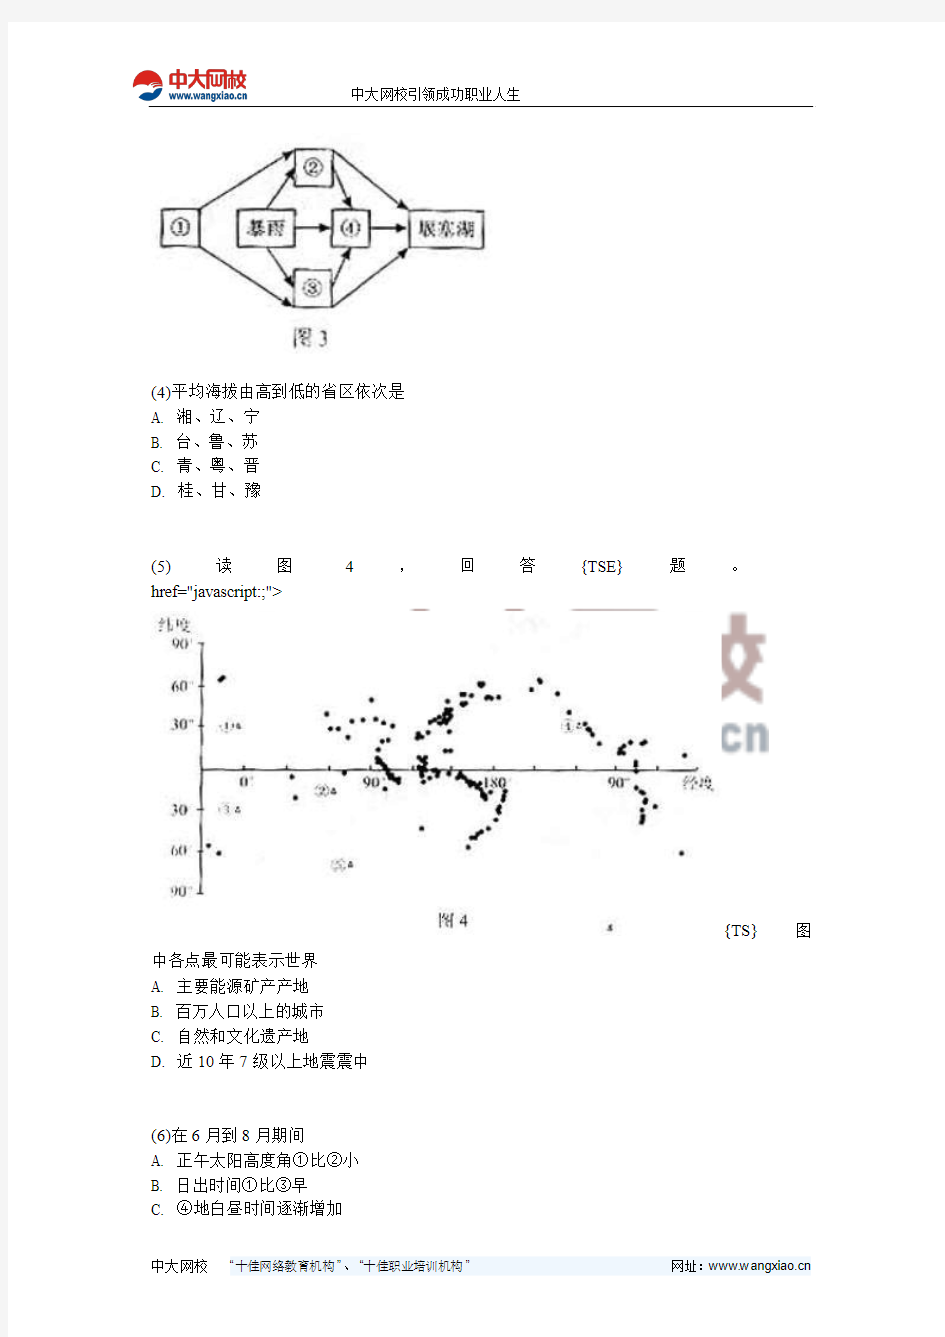 北京2011年高考文科综合试题及参考答案(估分)-中大网校